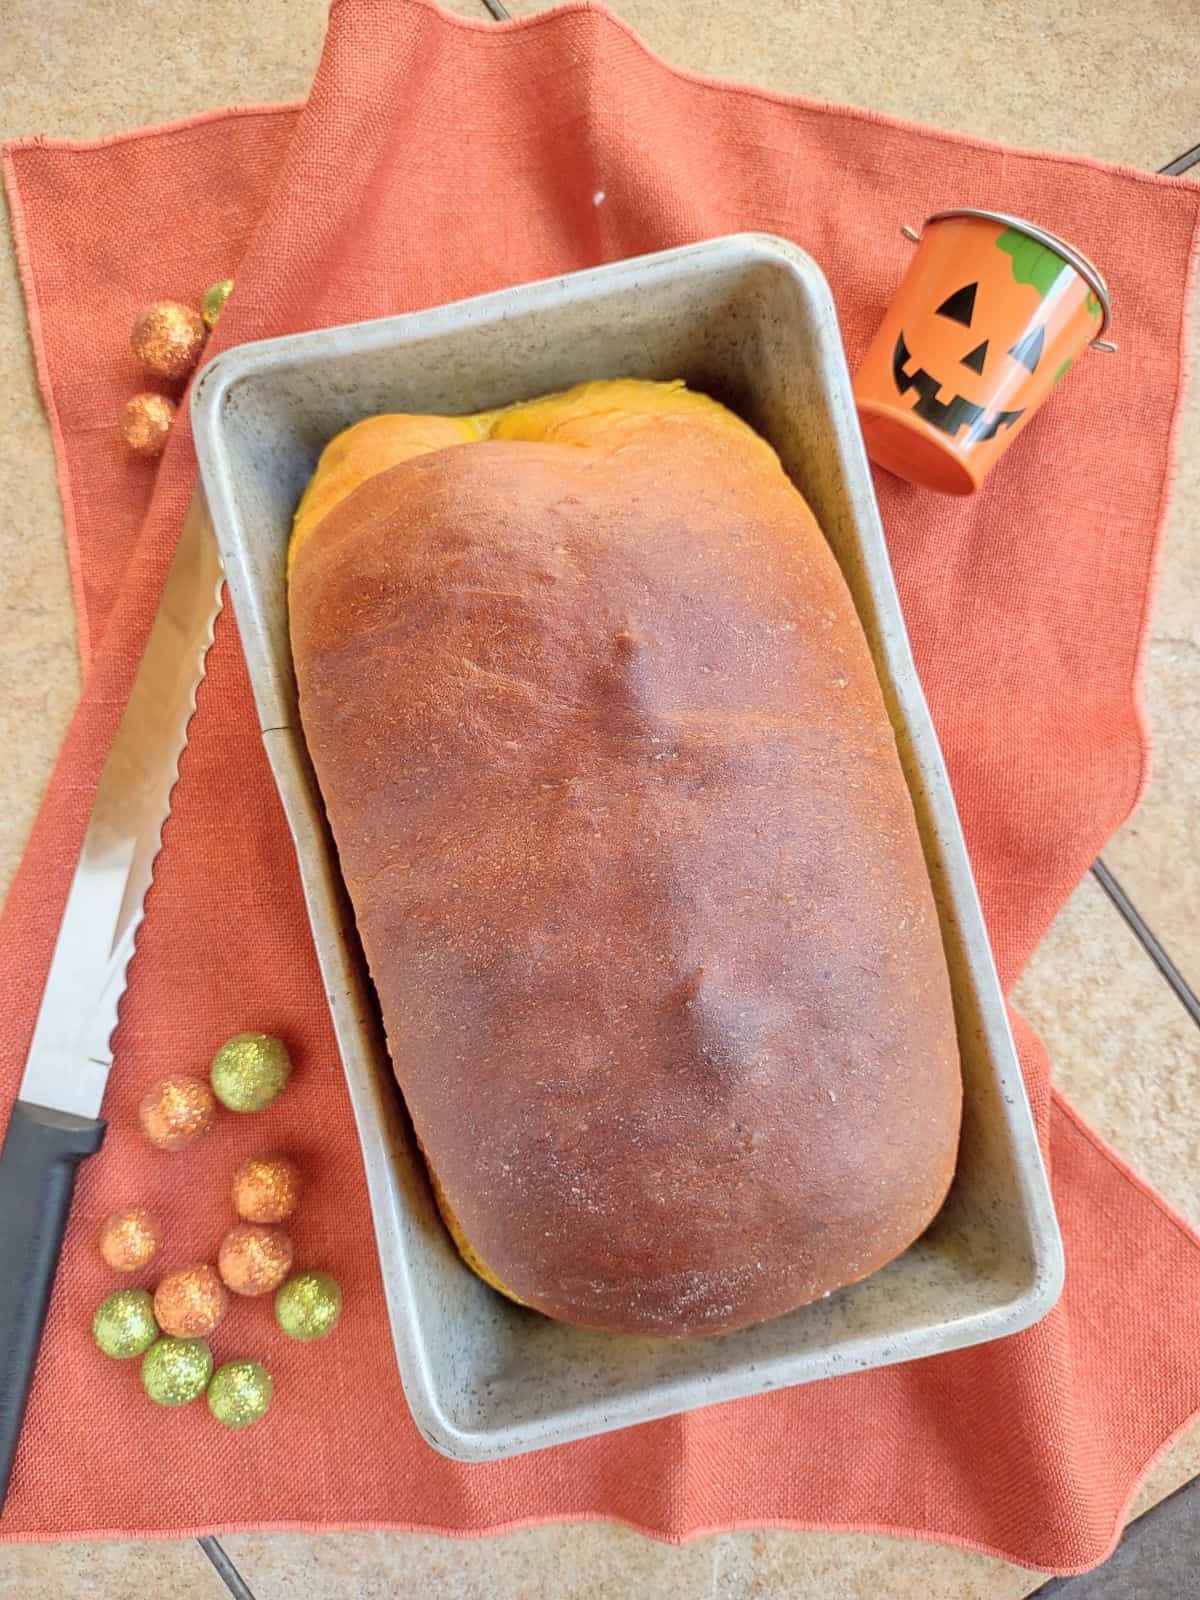 A loaf of pumpkin yeast bread in a metal loaf pan on a orange towel. 